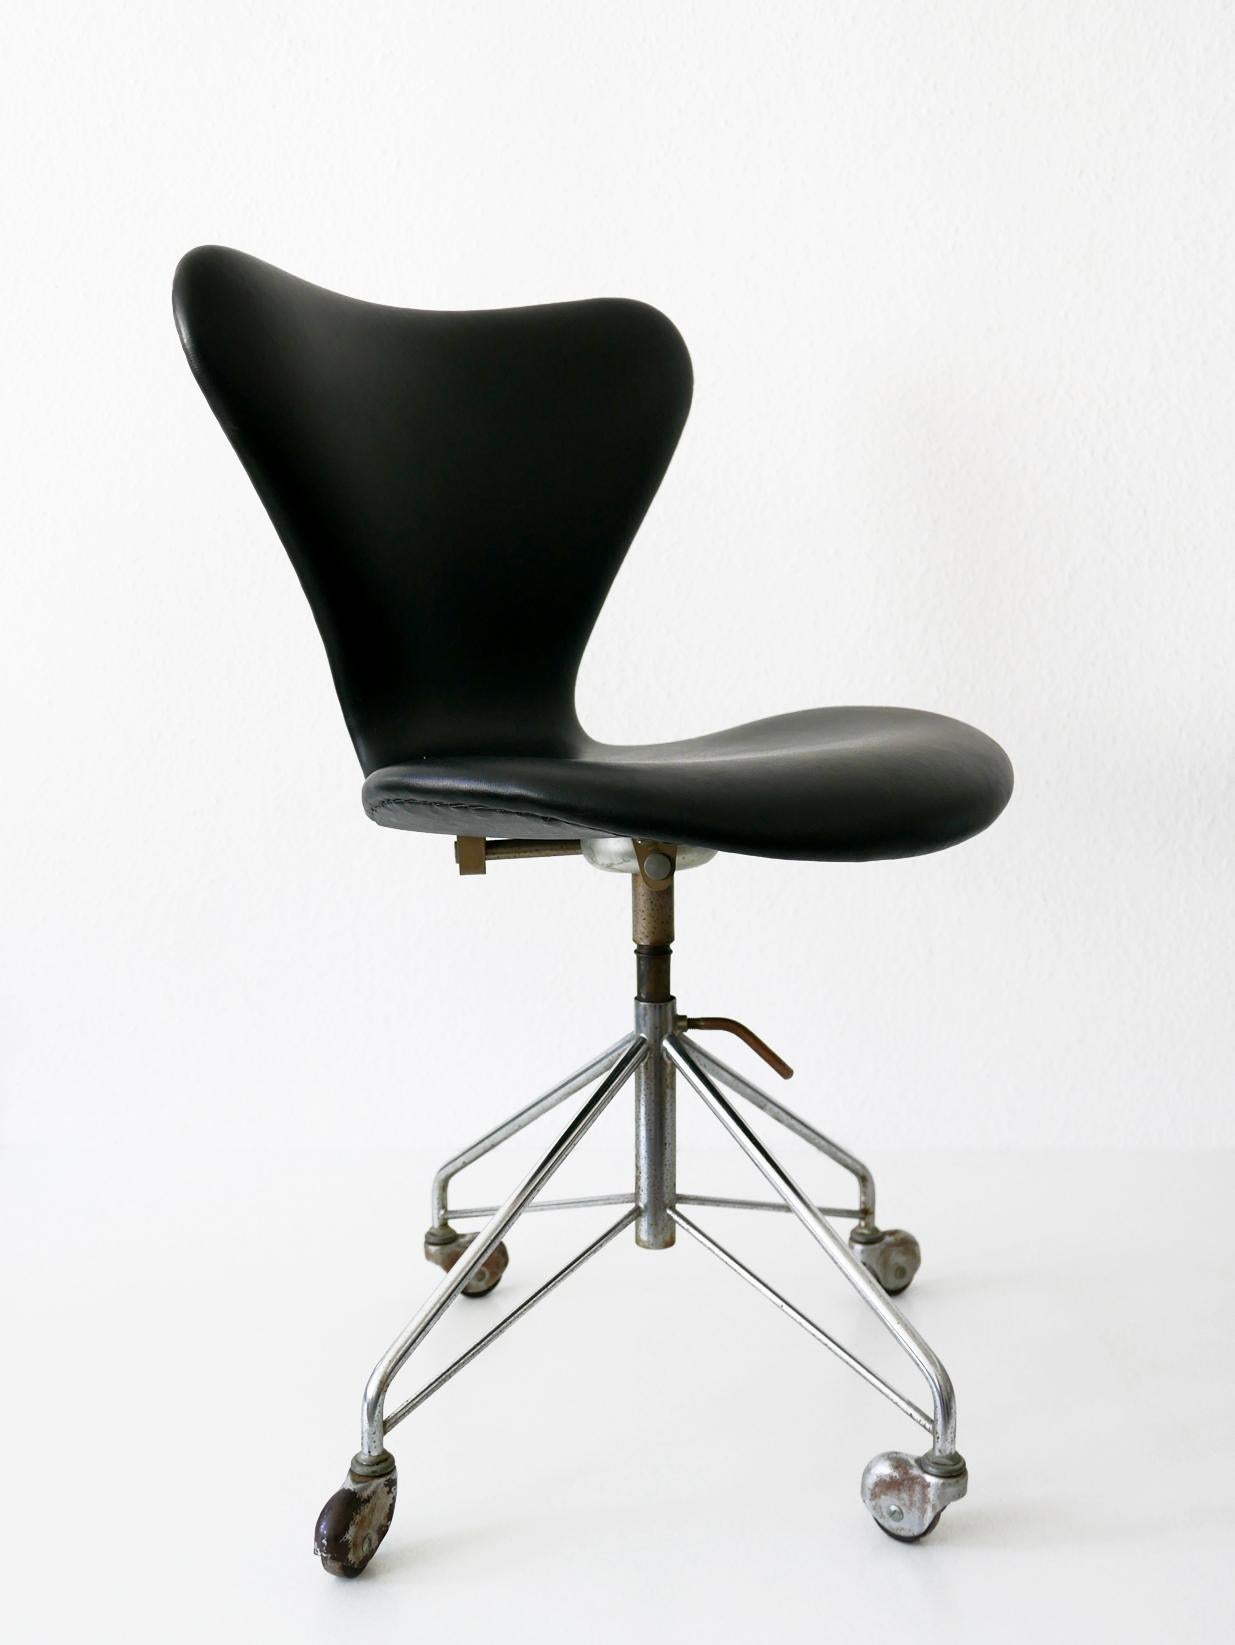 Danish Mid-Century Modern Office Chair 3117 by Arne Jacobsen for Fritz Hansen, 1960s For Sale